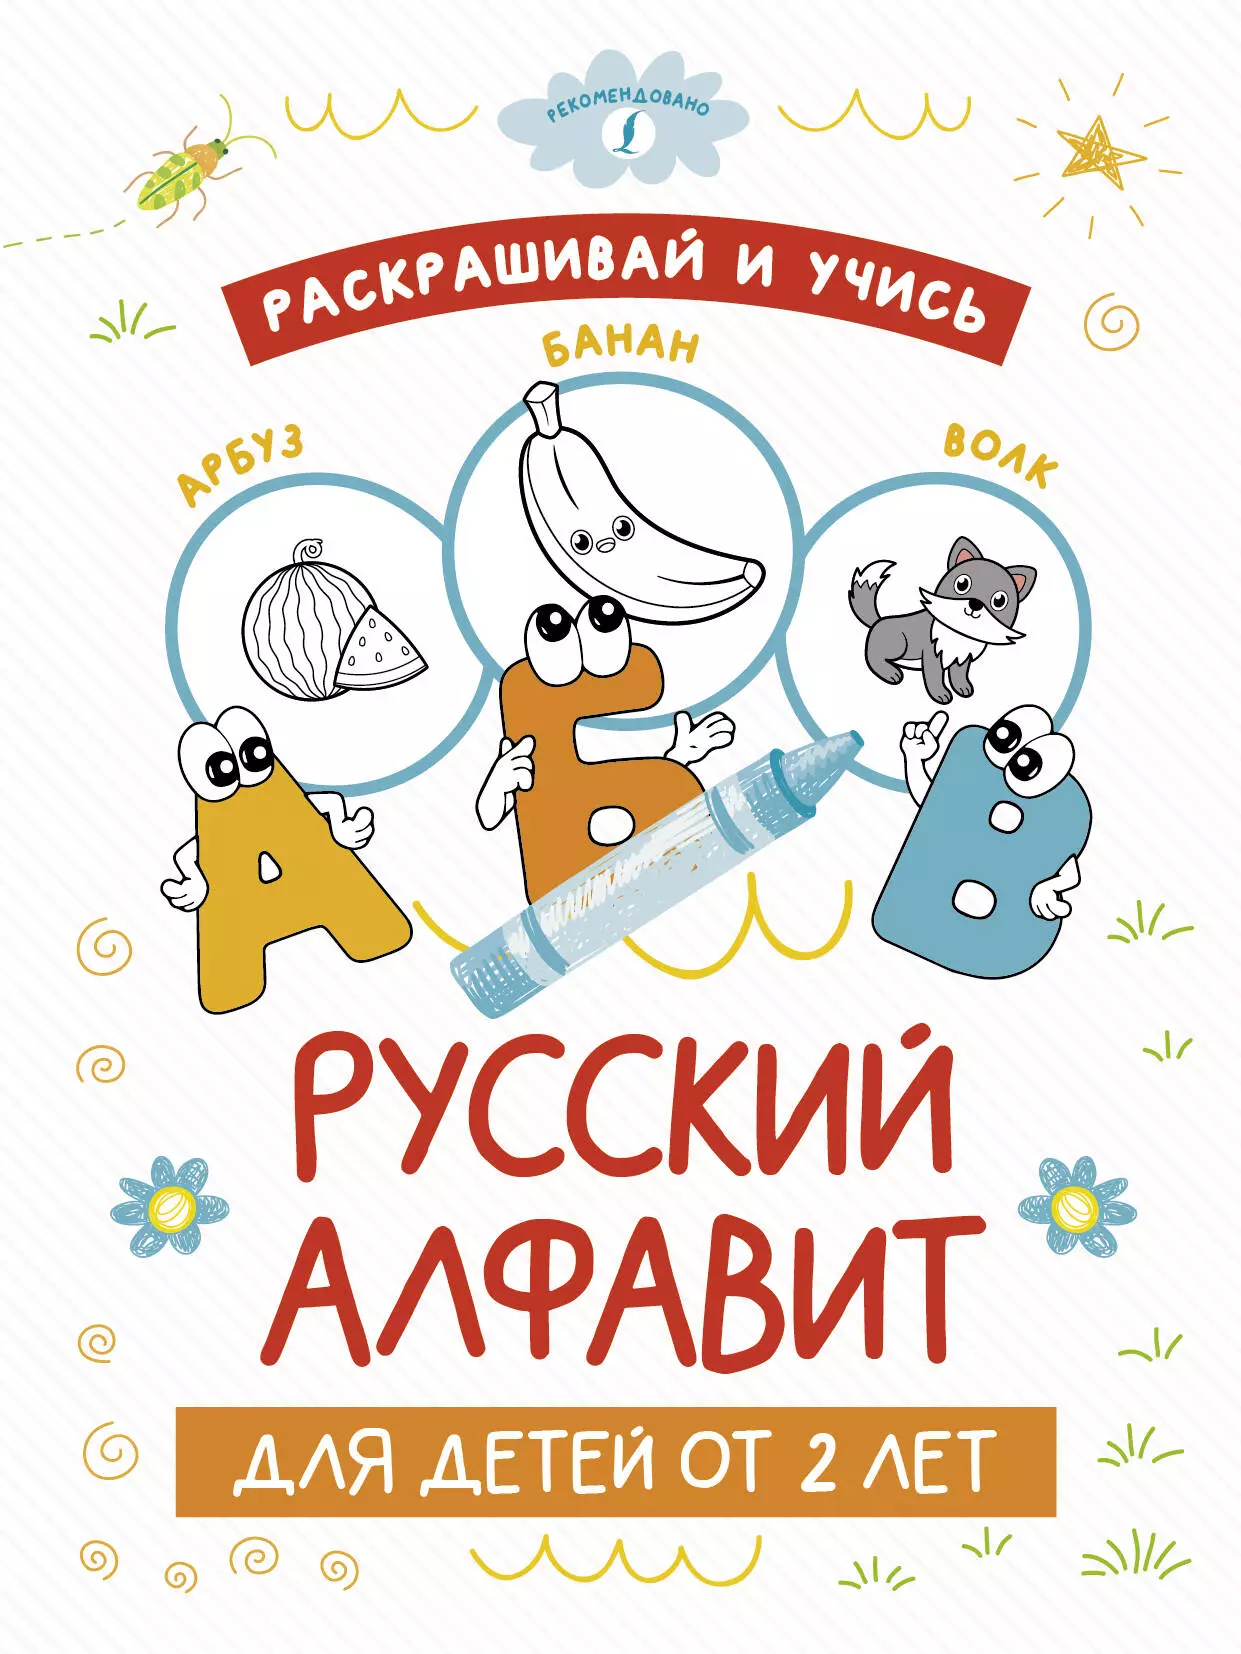 Раскрашивай и учись: русский алфавит для детей от 2 лет раскрашивай и учись русский алфавит для детей от 2 лет